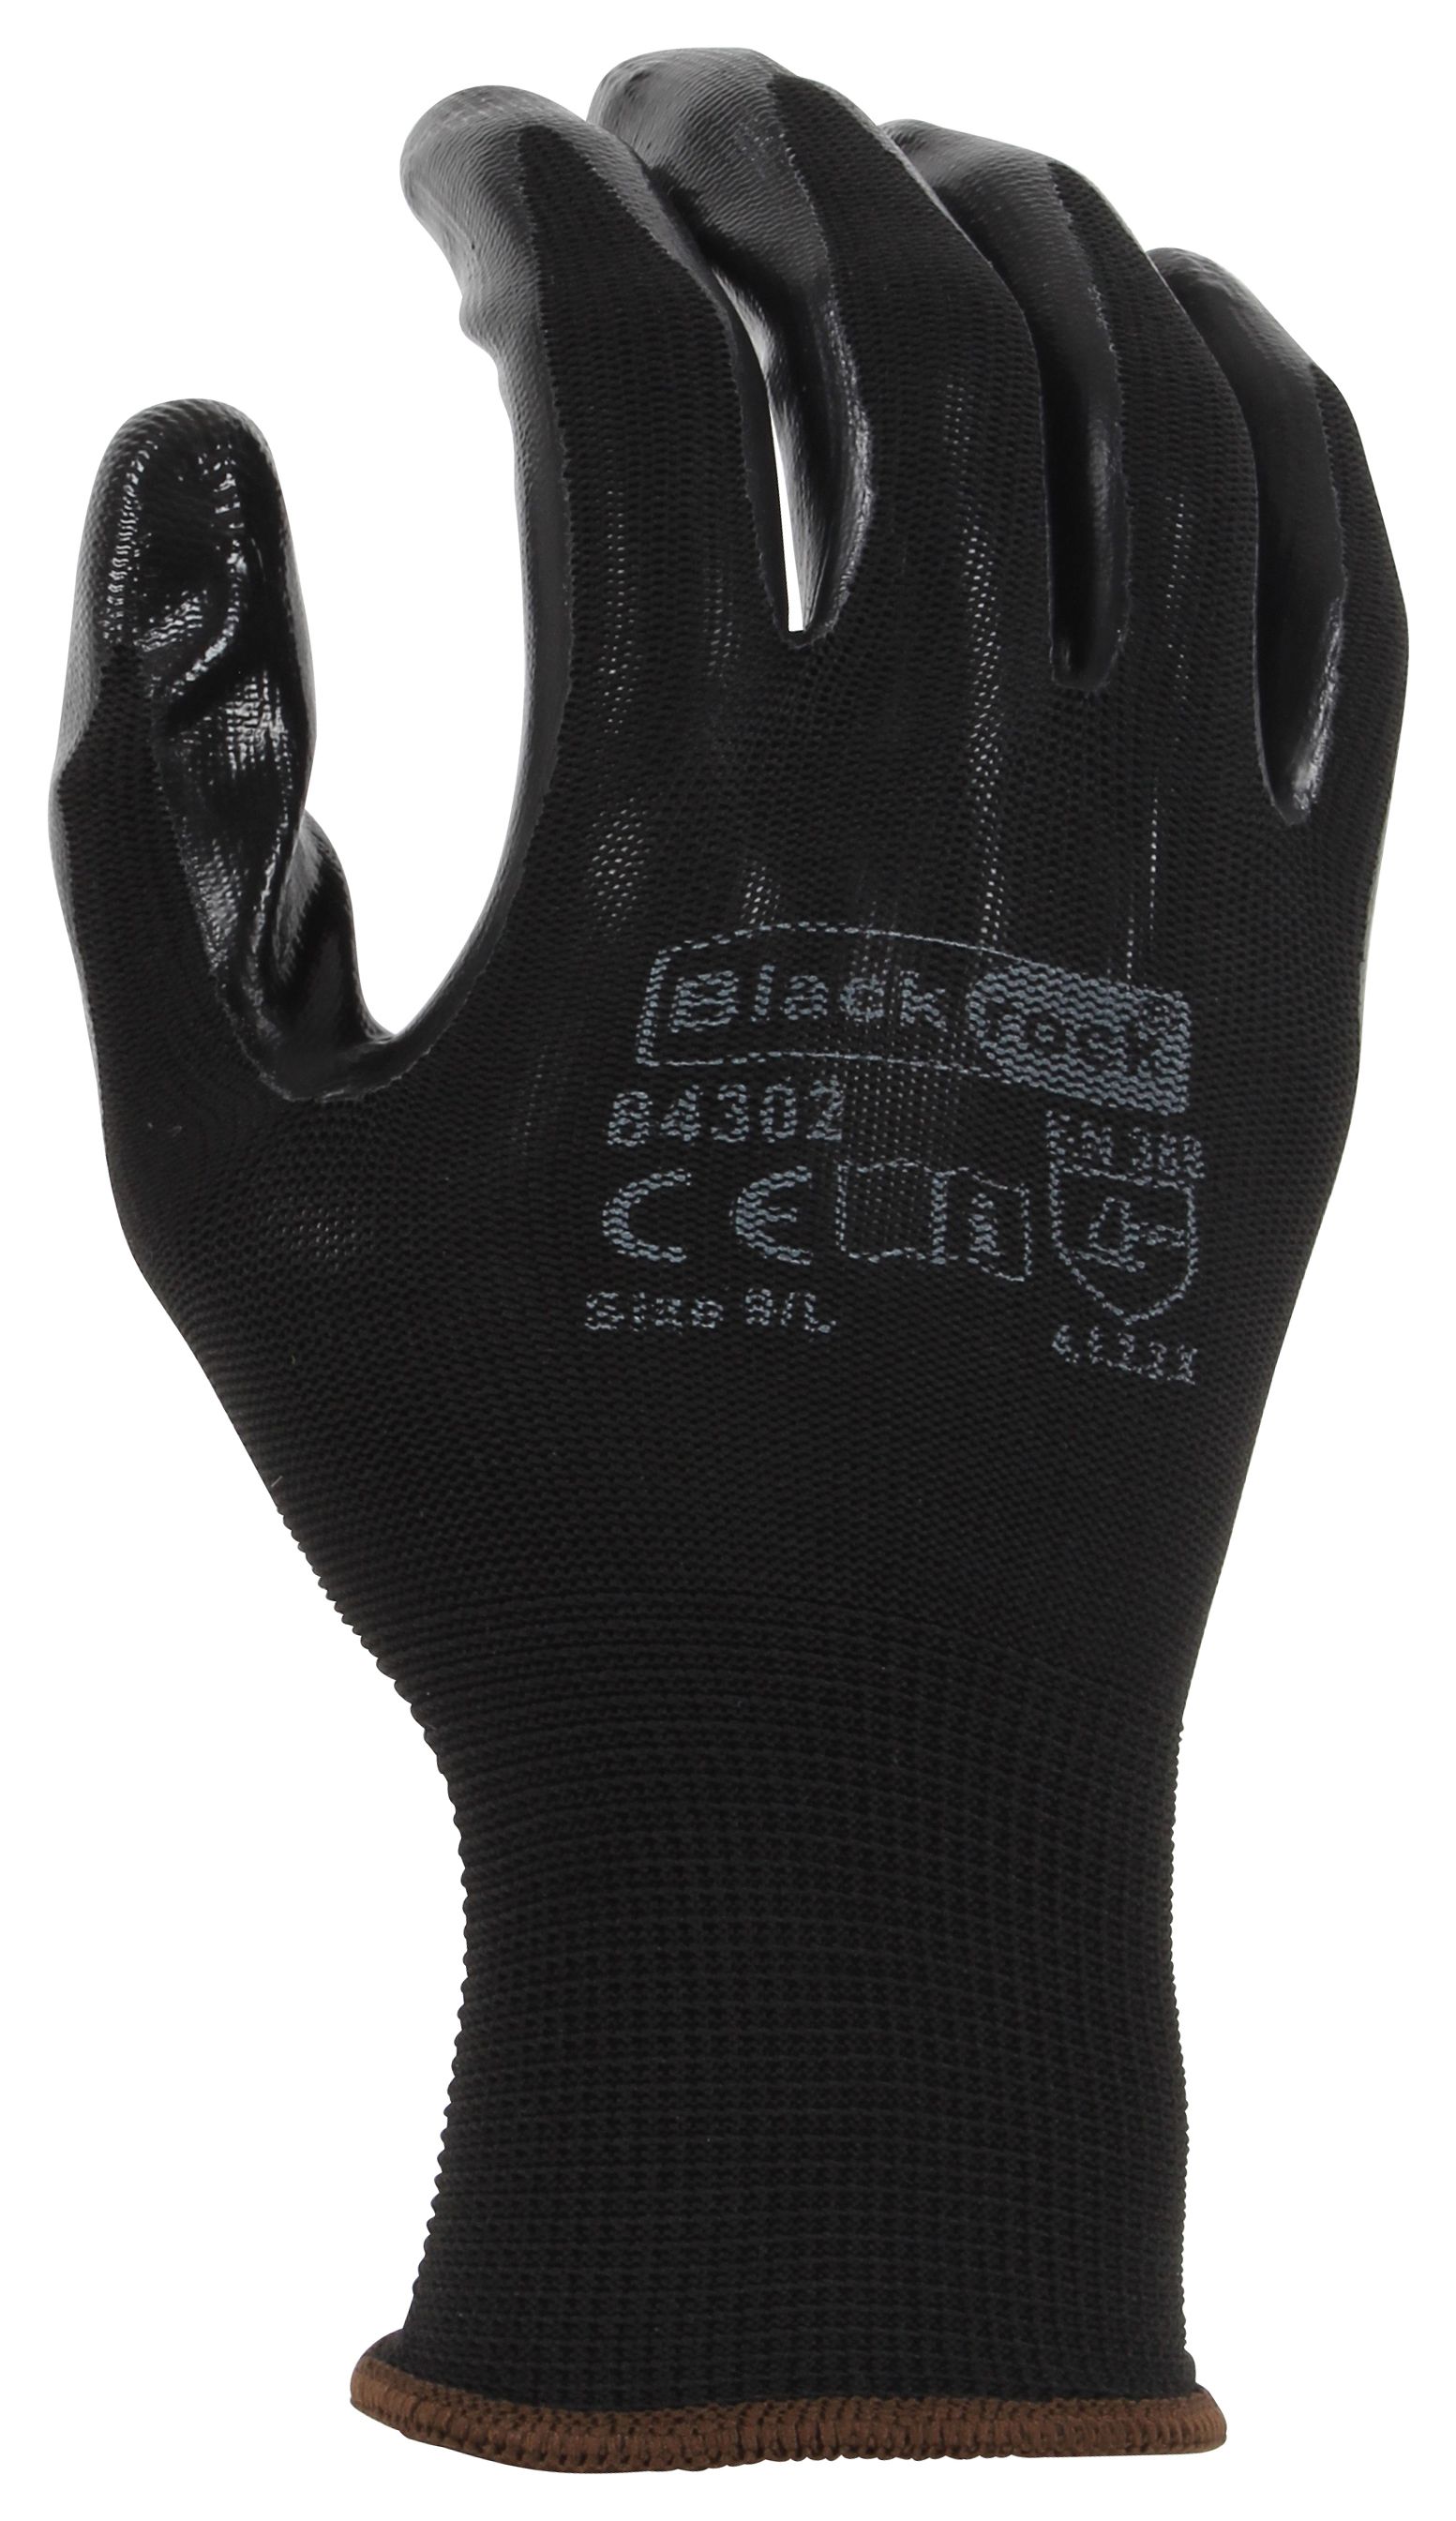 Image of Blackrock Super Grip Black Nitrile Gloves - Size L/9